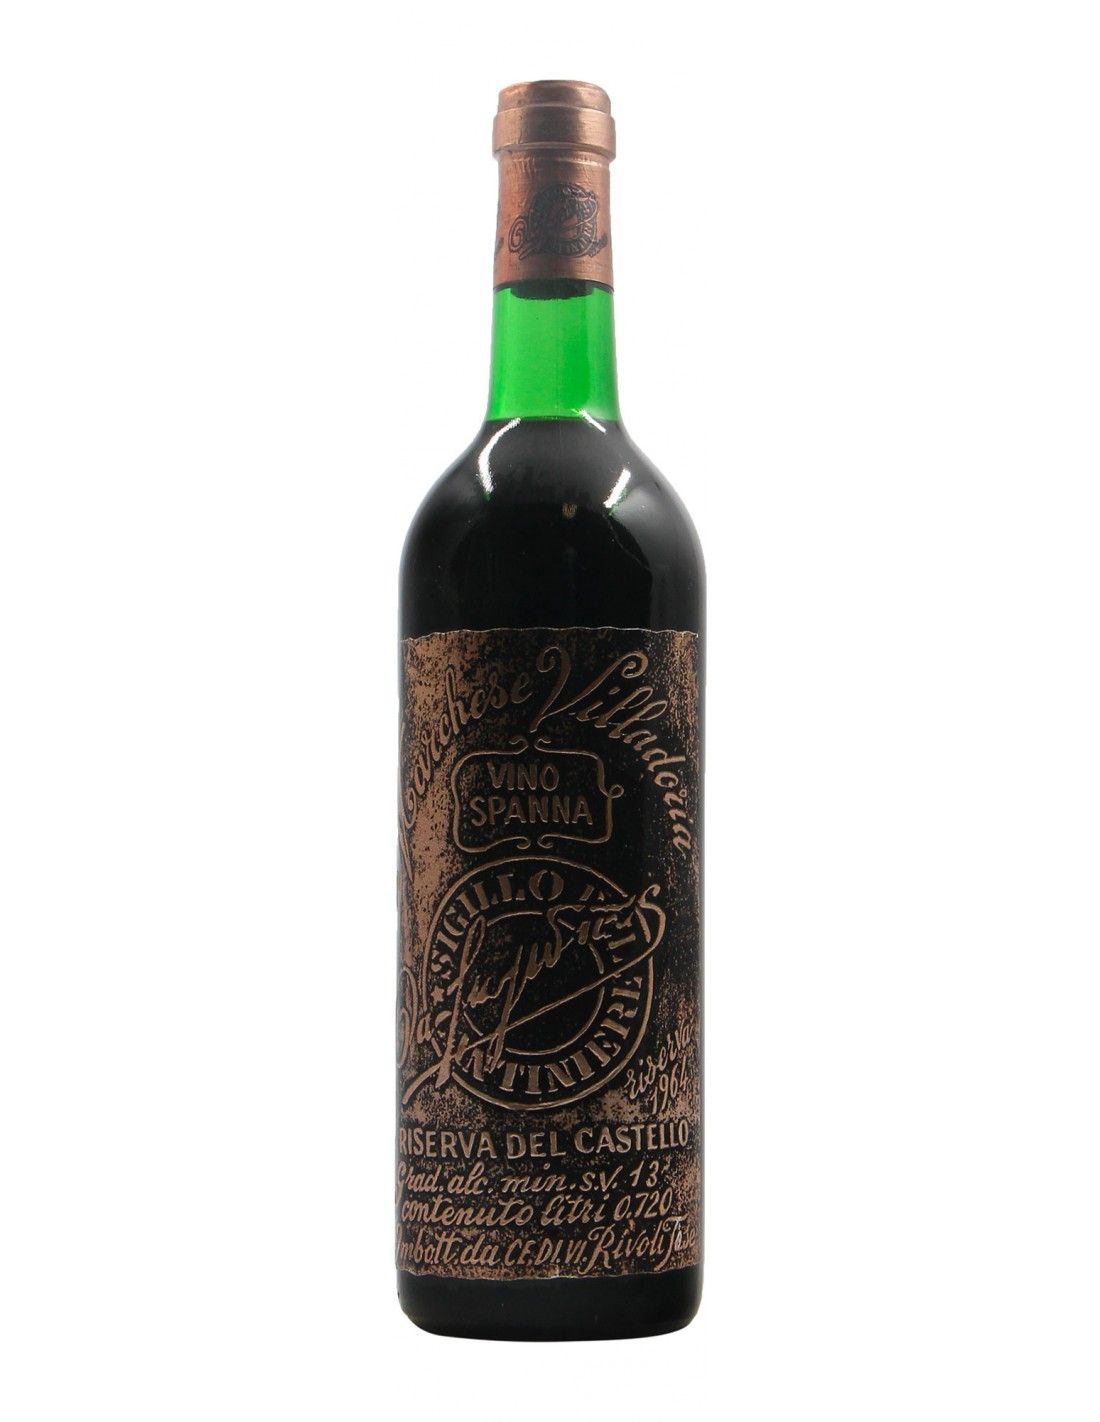 SPANNA RISERVA DEL CASTELLO 1964 VILLADORIA Grandi Bottiglie